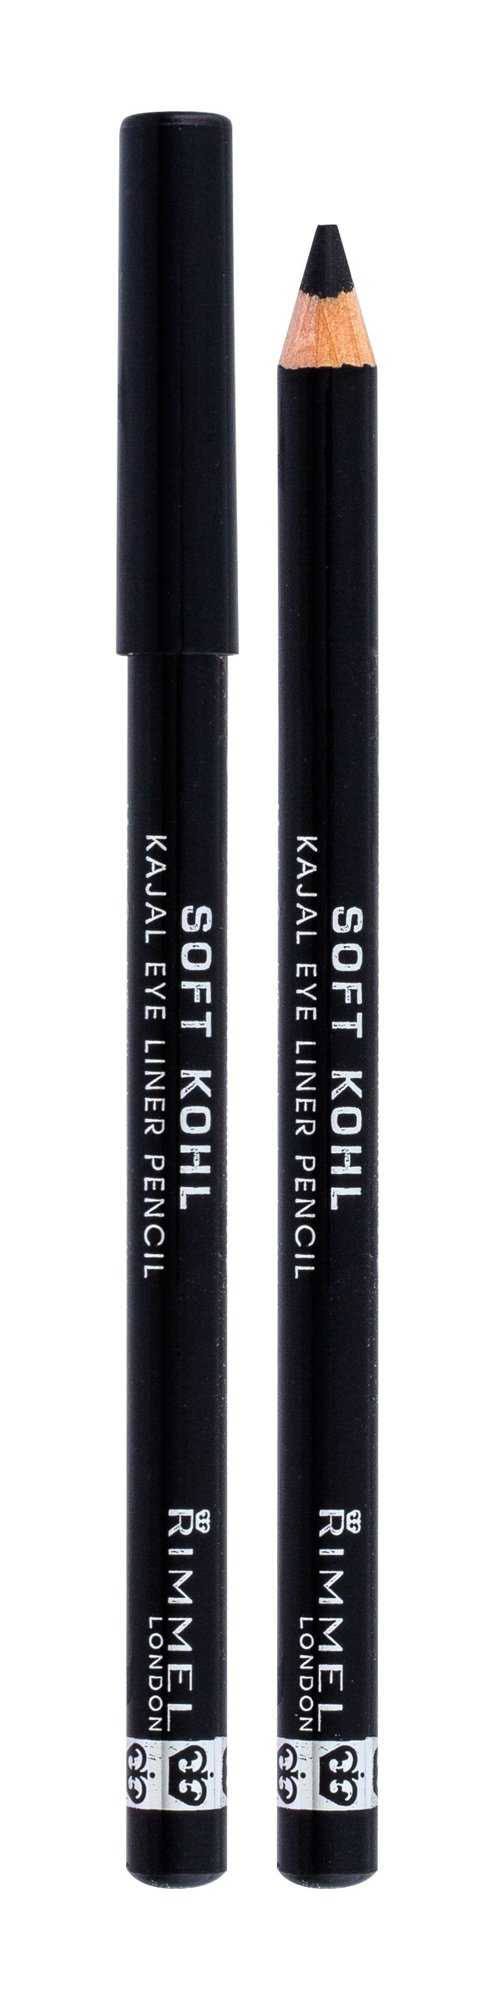 Rimmel London Soft Kohl Kajal Eye Liner Pencil - 061 Jet Black, 1.2g